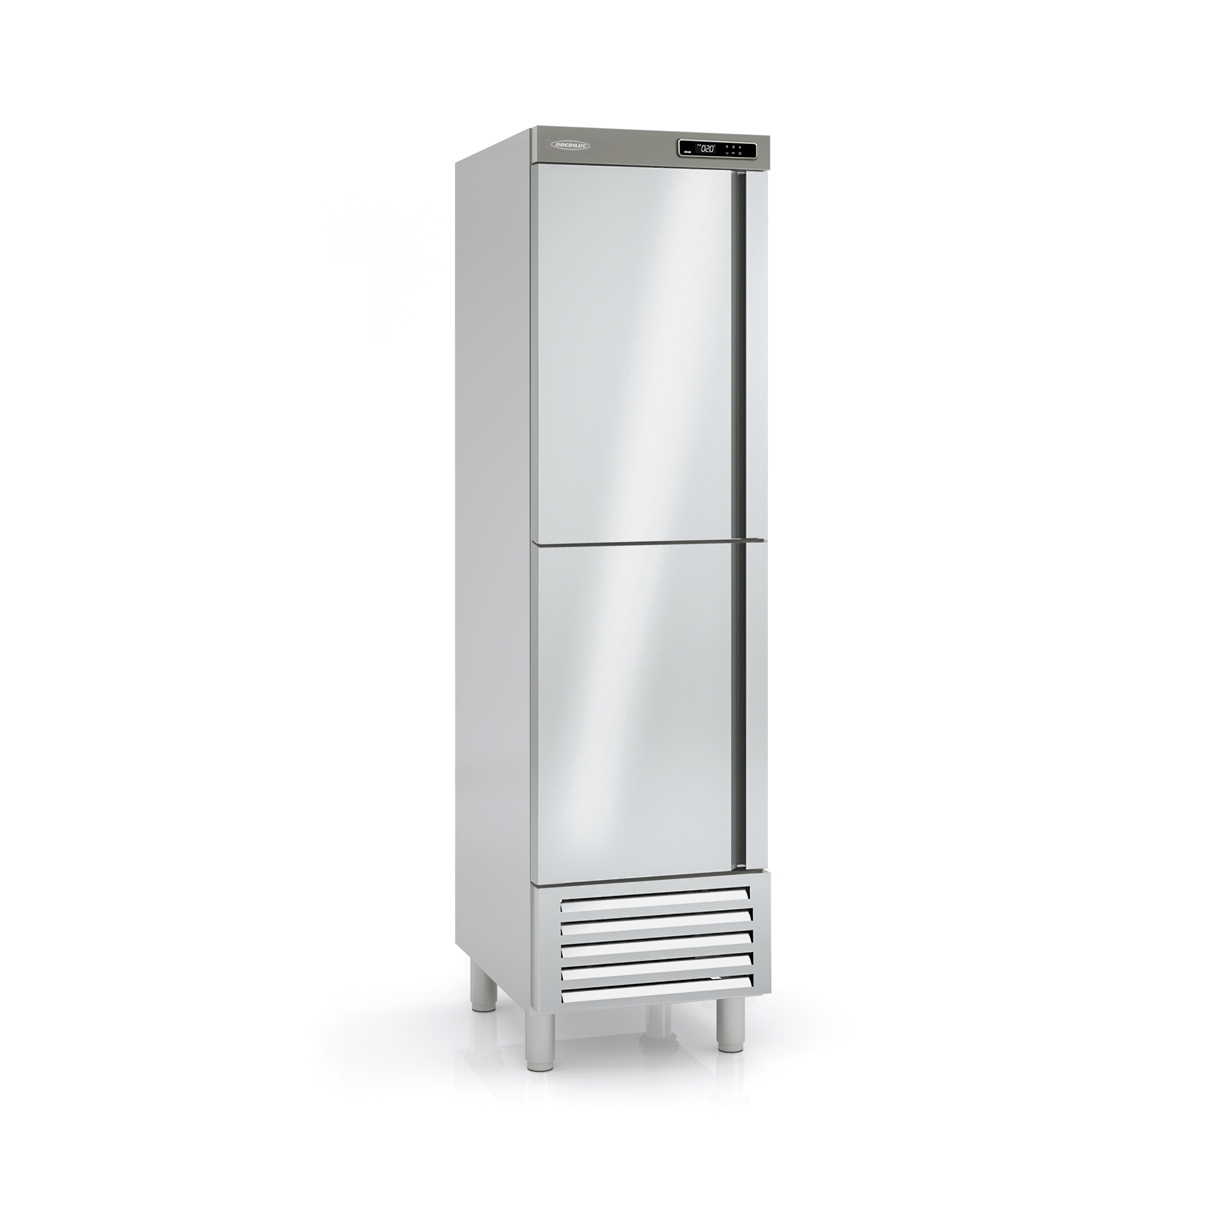 Snack Freezing Cabinet ARC-55-2